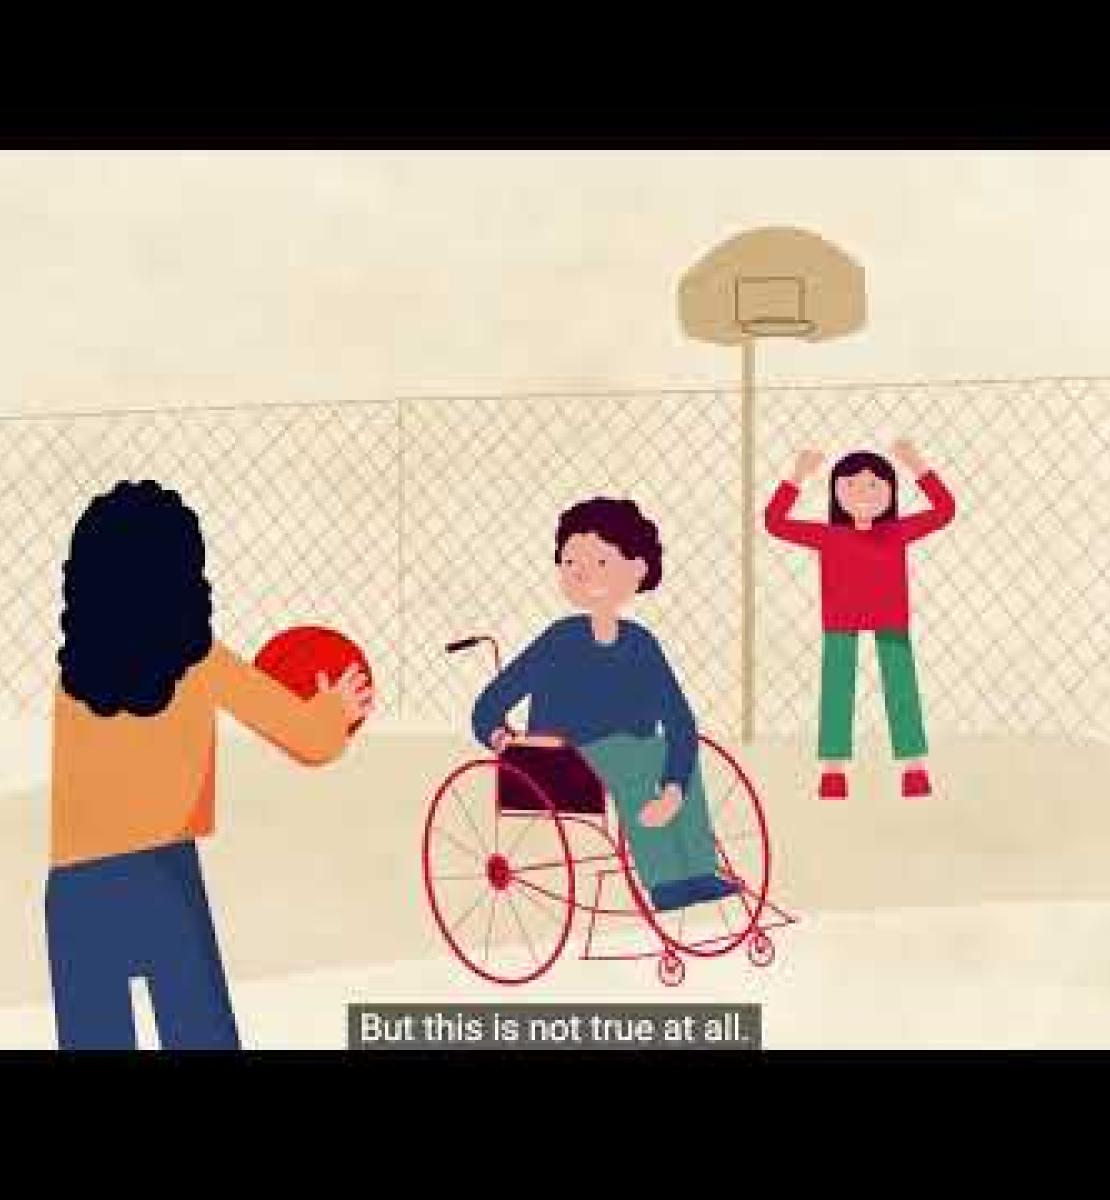 تعزيز الرؤية والحماية الاجتماعية للأشخاص ذوي الإعاقة في جورجيا